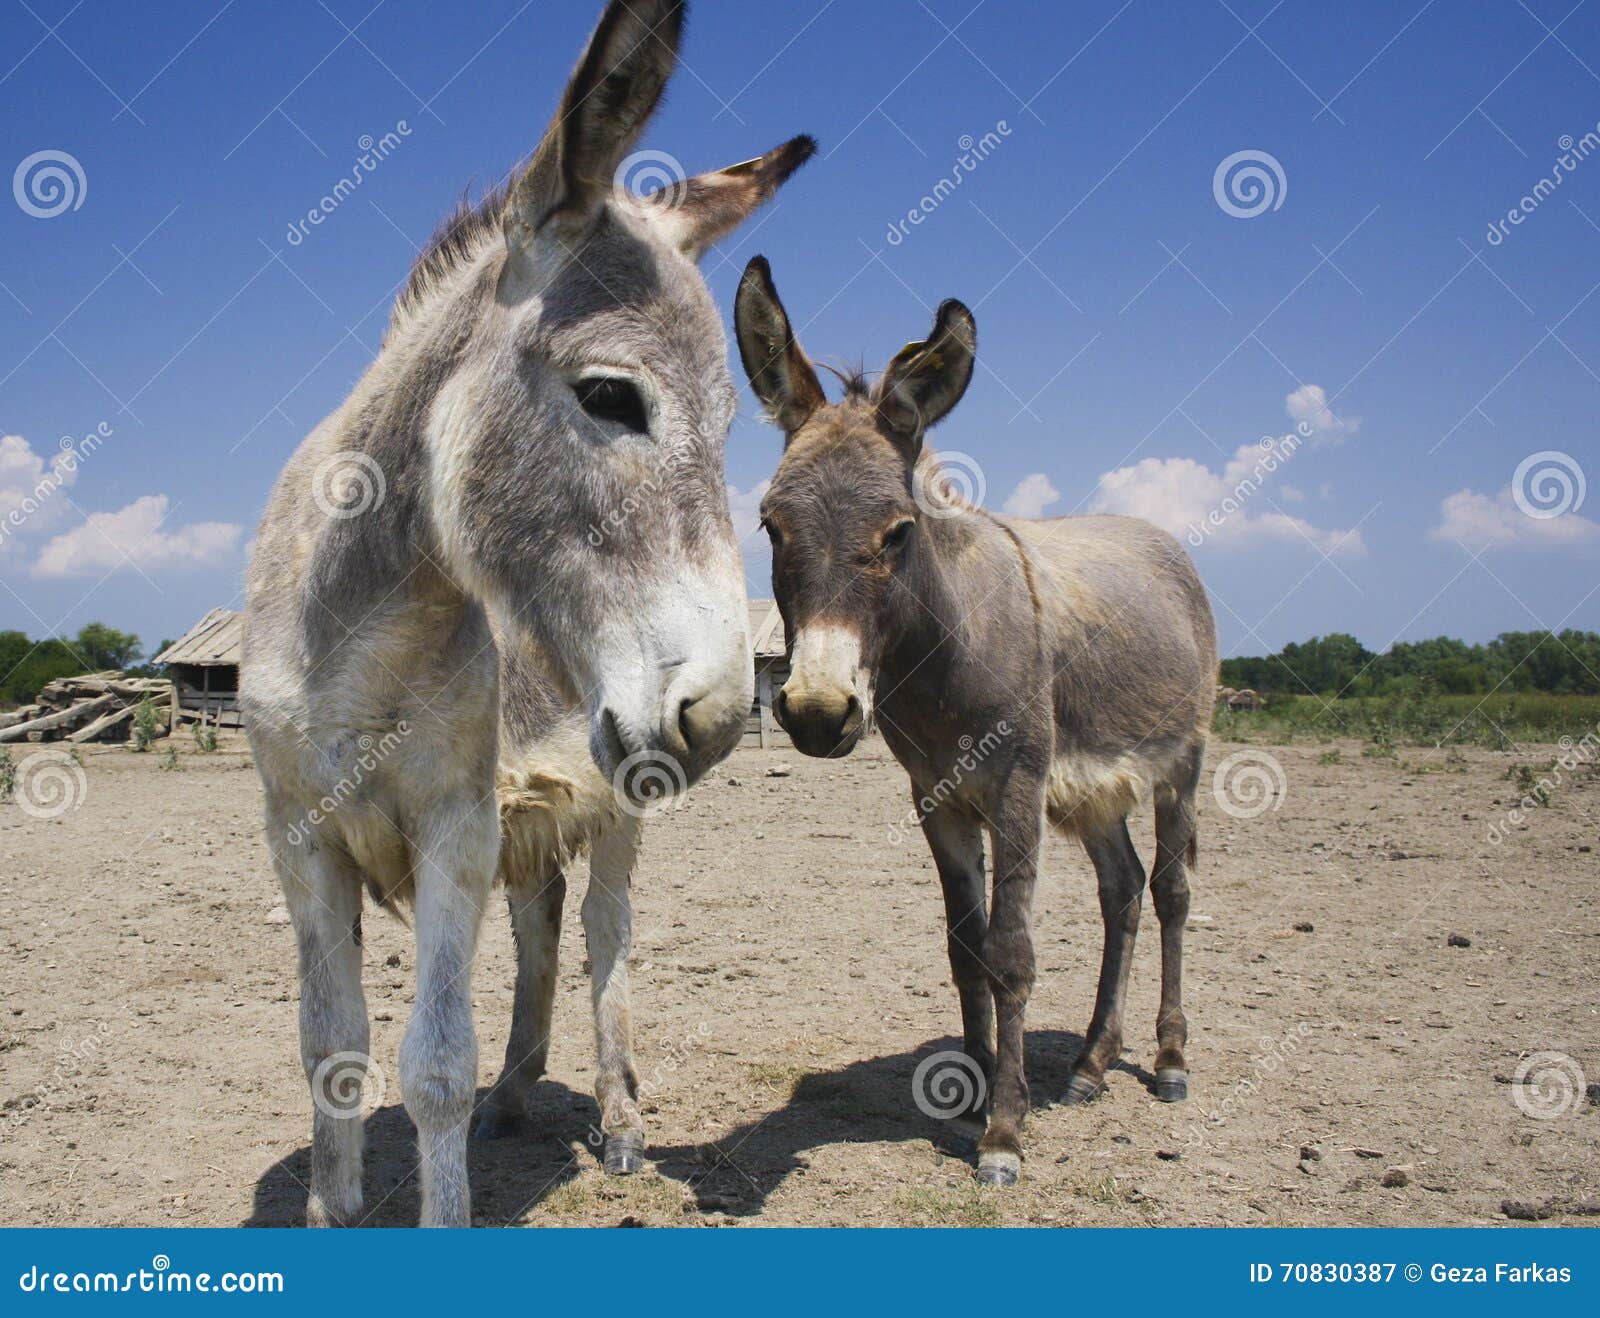 Two Donkeys on the Old Farm Stock Image - Image of nature, donkey: 70830387